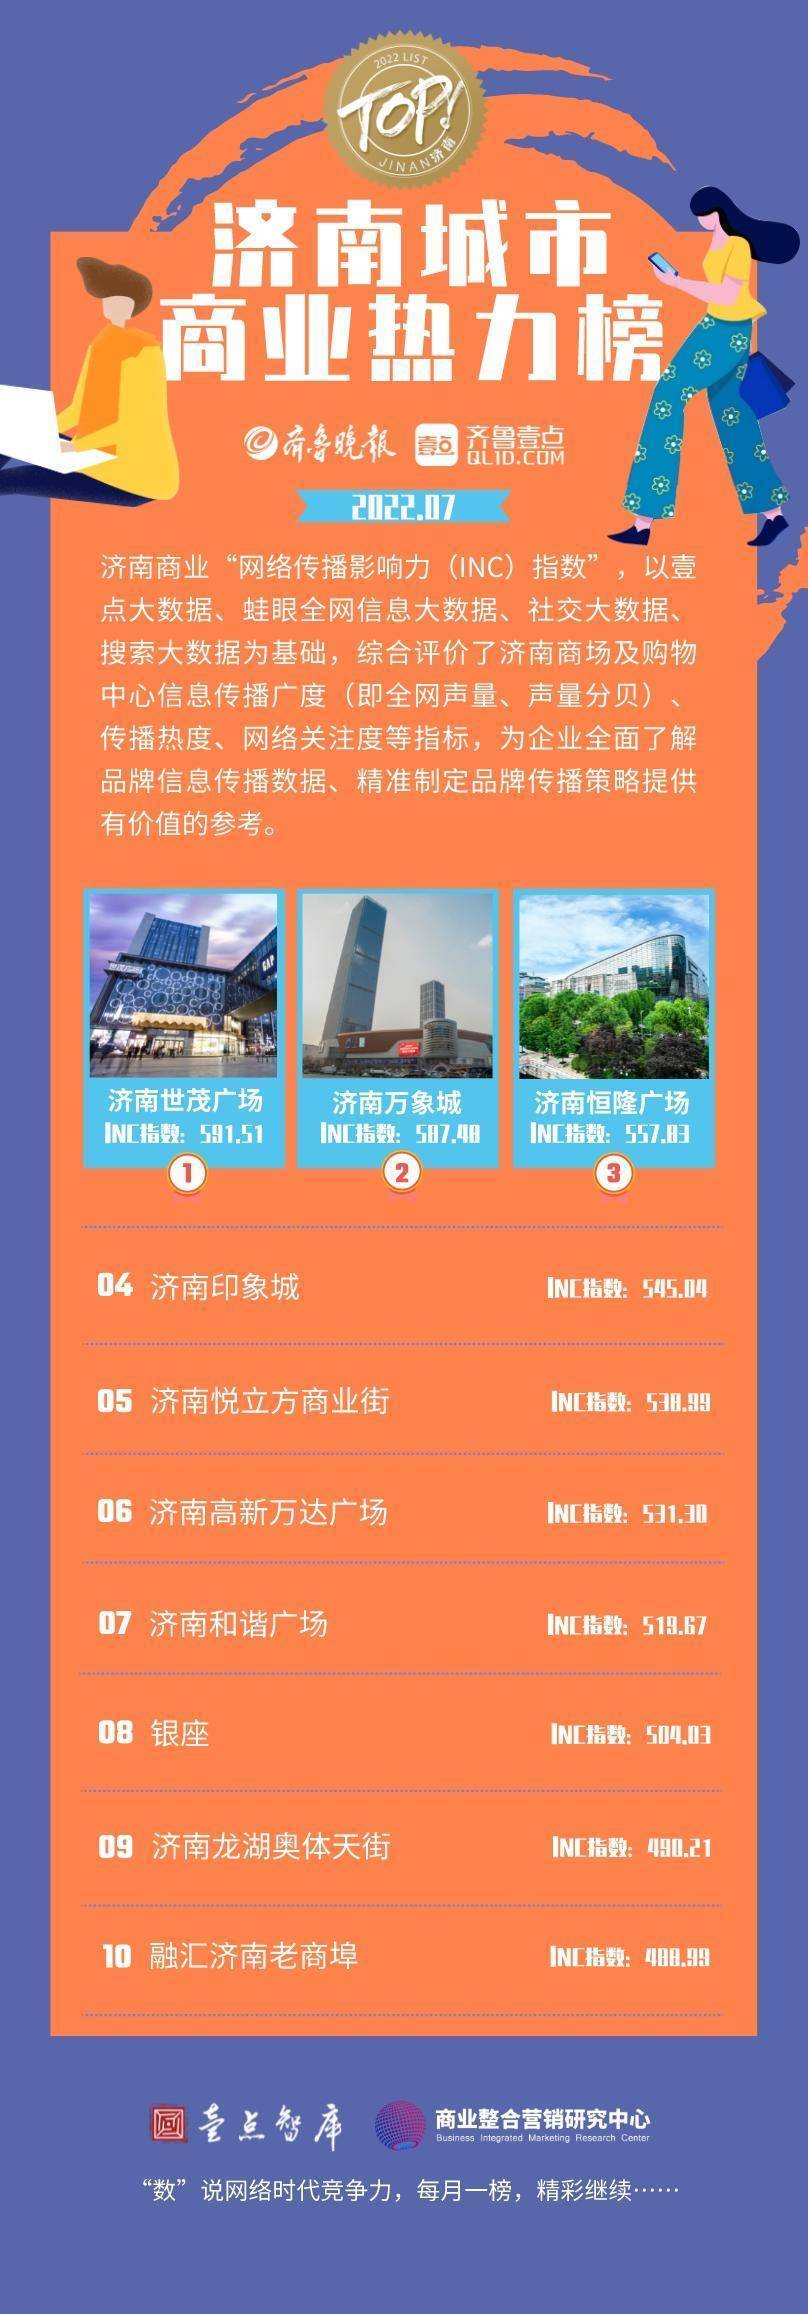 济南城市商业热力榜9月榜单出炉哪些商场热度最高